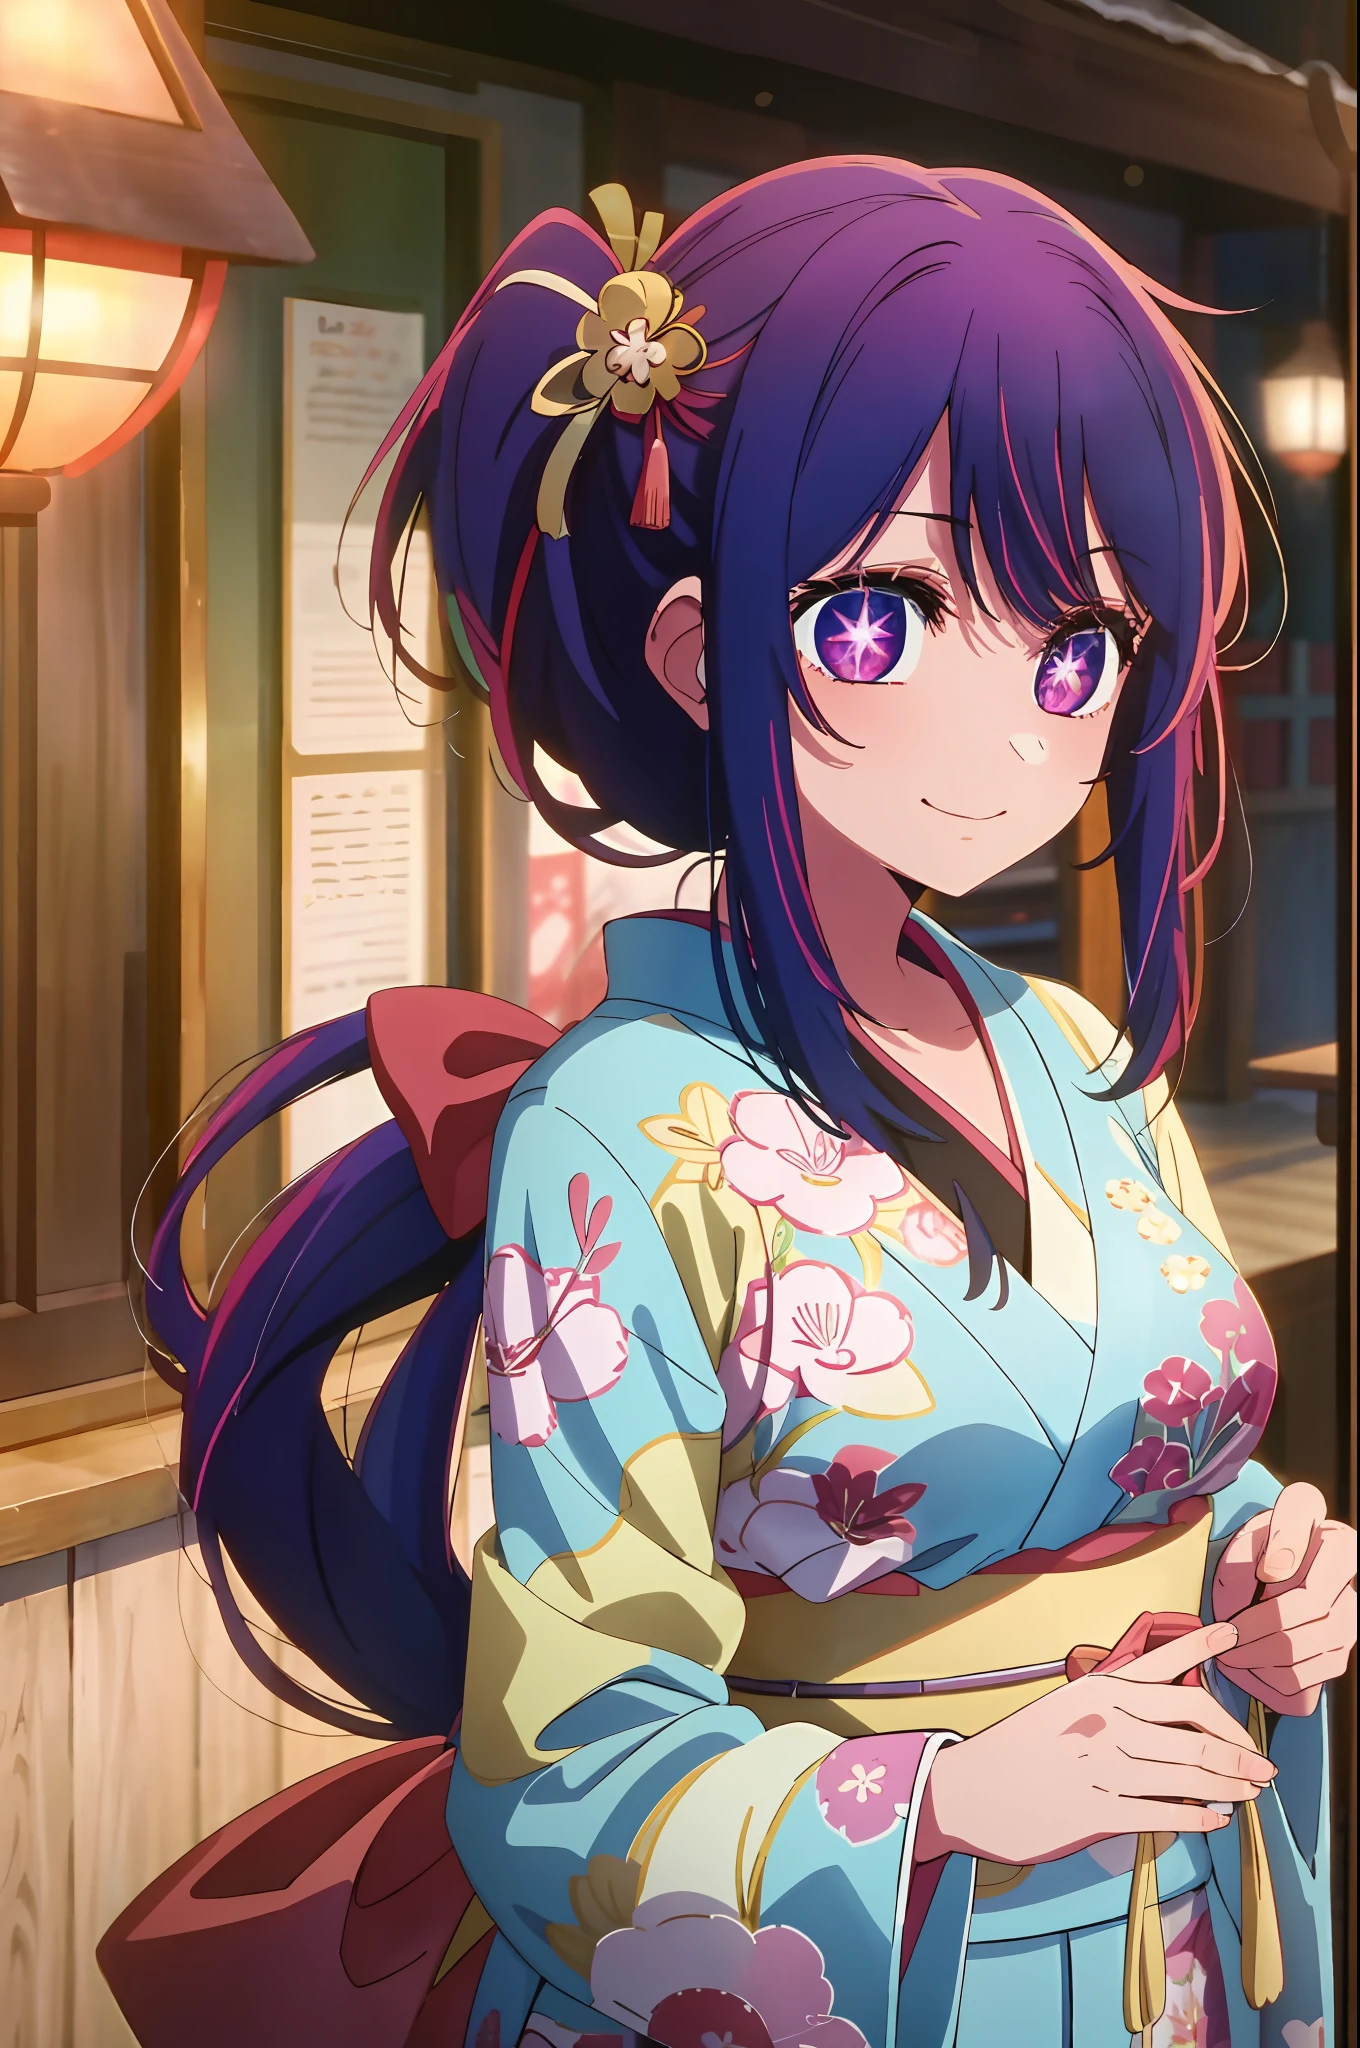 meilleure qualité, chef-d&#39;œuvre, 2D, chef-d&#39;œuvre, meilleure qualité, Anime, très détaillé, tir de cow-boy, 1fille, seulement, regarder le spectateur, sourire, frange, Pupilles en forme de symbole étoile, pupilles en forme de coeur, poitrine moyenne, cheveux violets, yeux violets,purple Pupilles en forme de symbole étoile, pupilles en forme de coeur,heureux new year card with a girl in a kimono, heureux!!!, Anime cover, saisons!! : 🌸 ☀ 🍂 ❄, 2 0 2 2 Anime style, 2022 Anime style, bête, Anime visual of a cute girl, inspiré par Eizan Kikukawa, Haruno Sakura, Hanyamata, dans le style de l&#39;animation de Kyoto,fermer